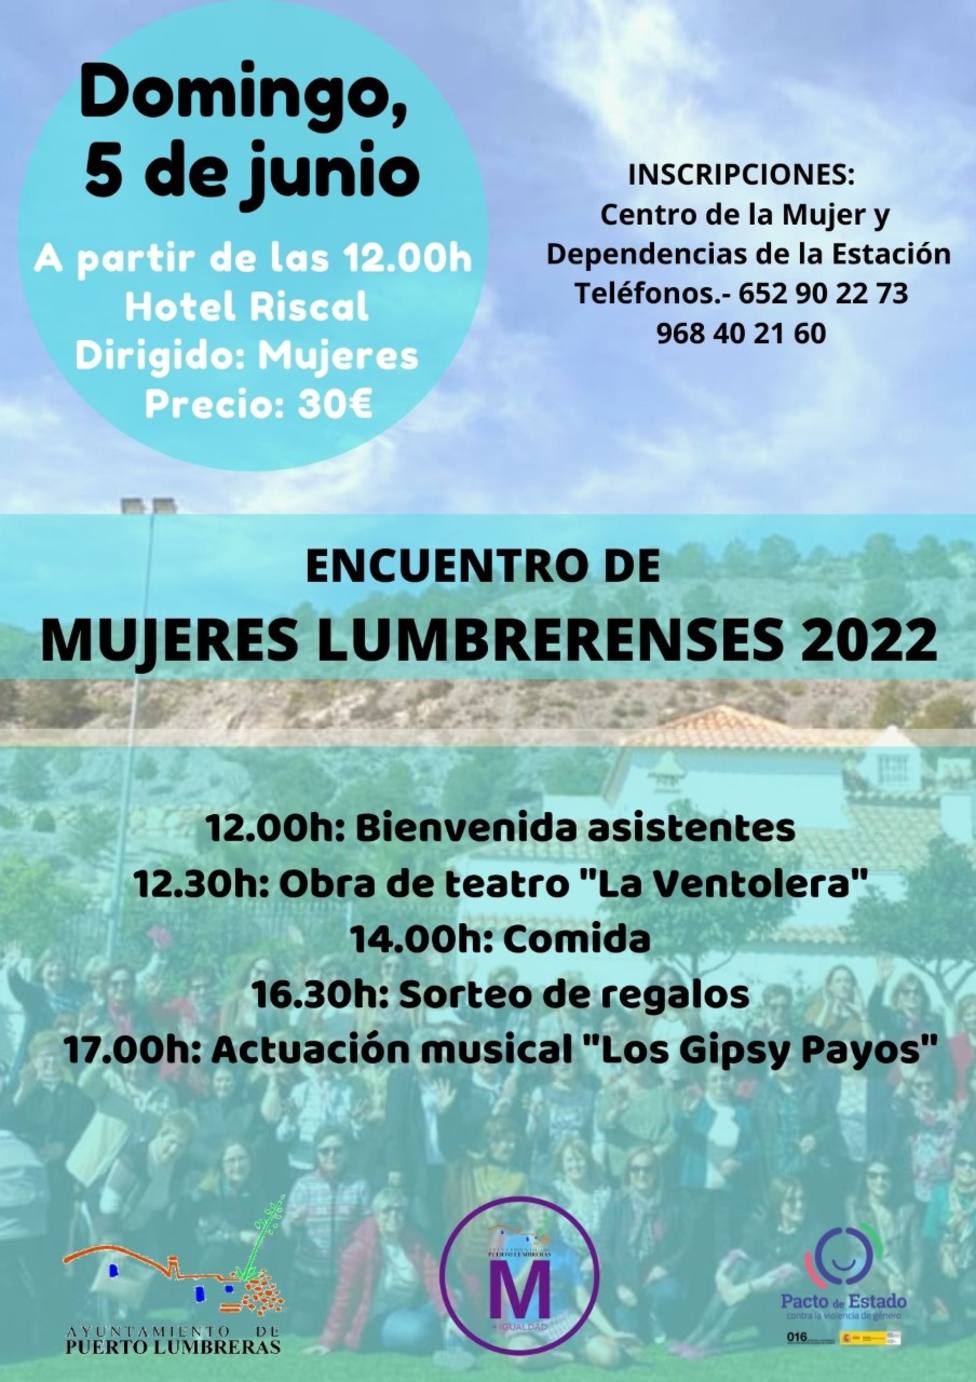 Puerto Lumbreras organiza el tradicional encuentro de mujeres lumbrerenses 2022